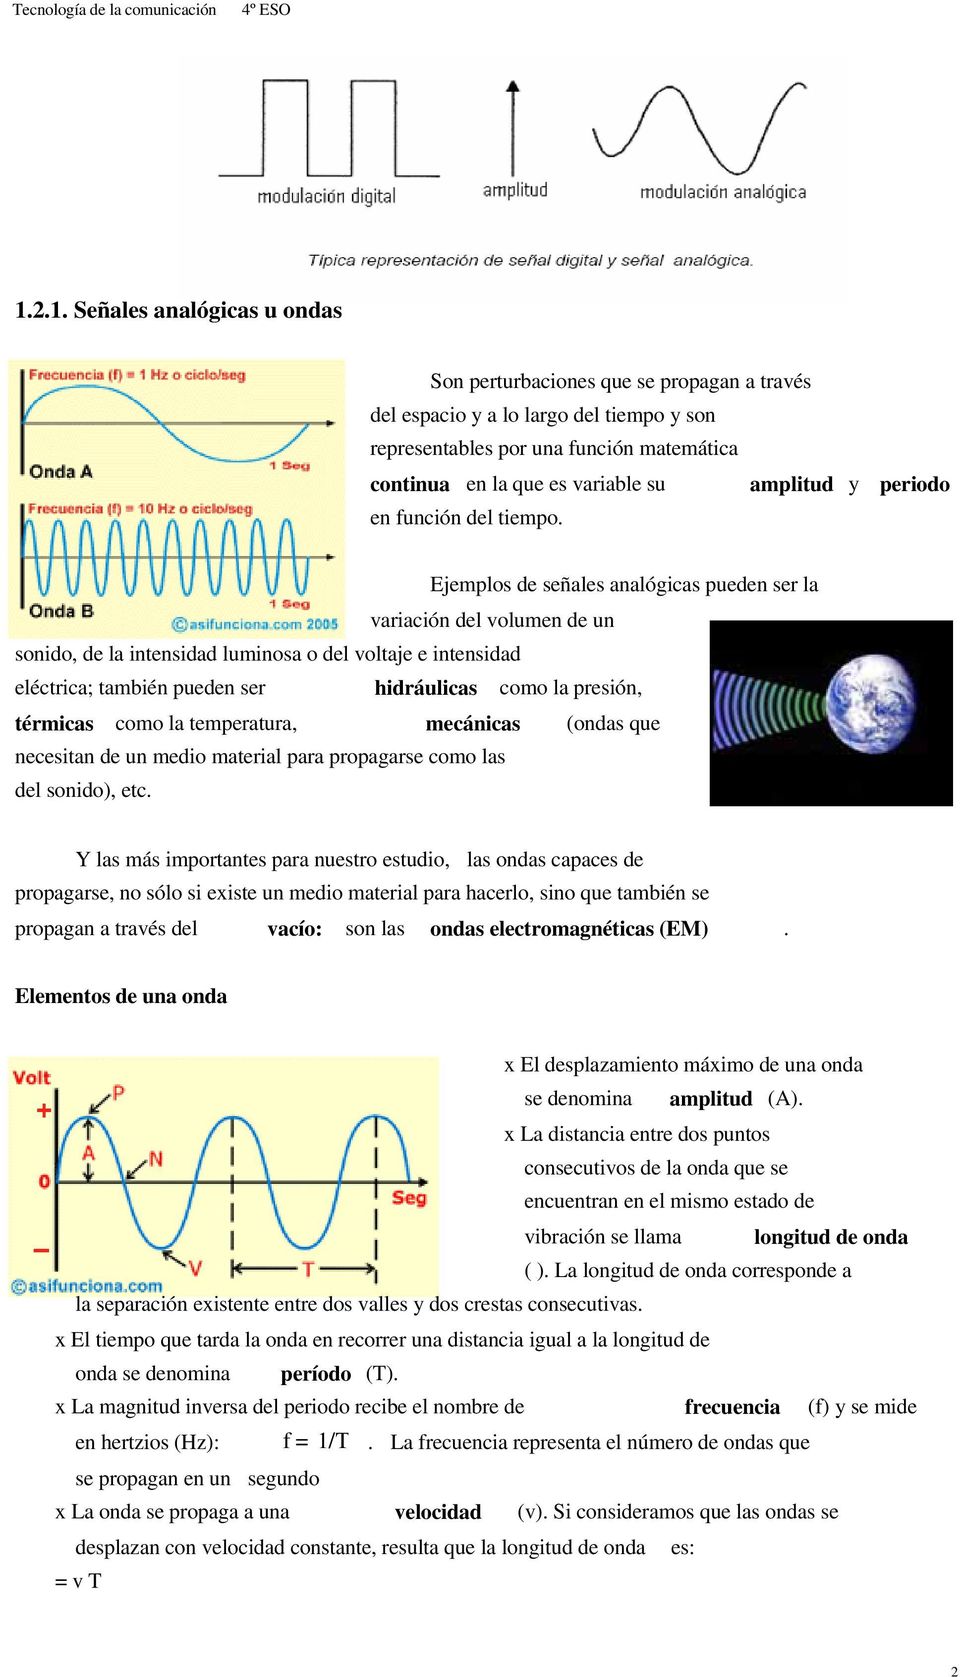 Ejemplos de señales analógicas pueden ser la variación del volumen de un sonido, de la intensidad luminosa o del voltaje e intensidad eléctrica; también pueden ser hidráulicas como la presión,